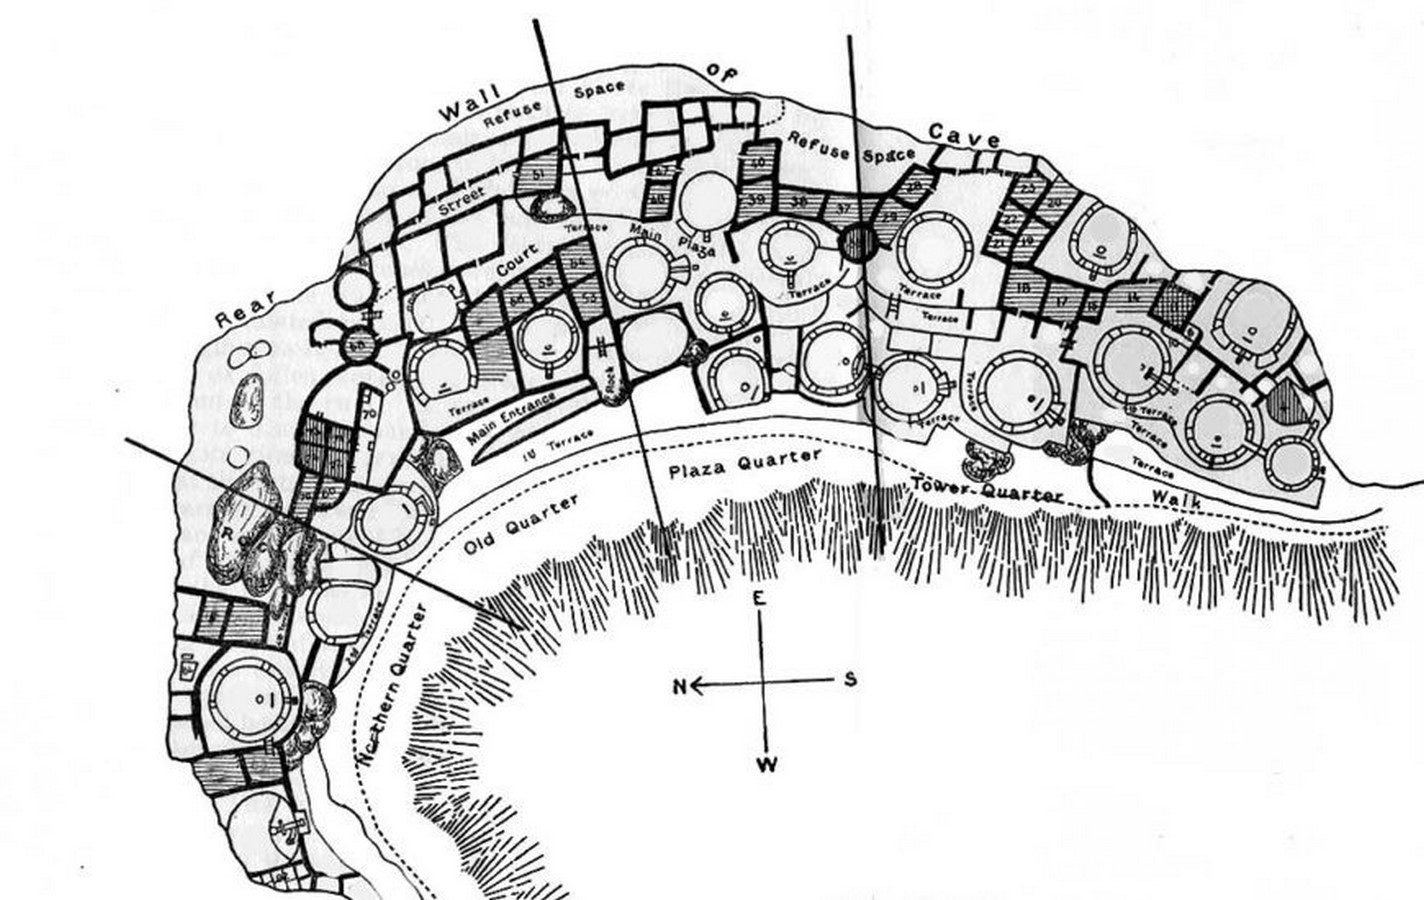 Circular Kivas, Plan of Cliff Palace_© National Park